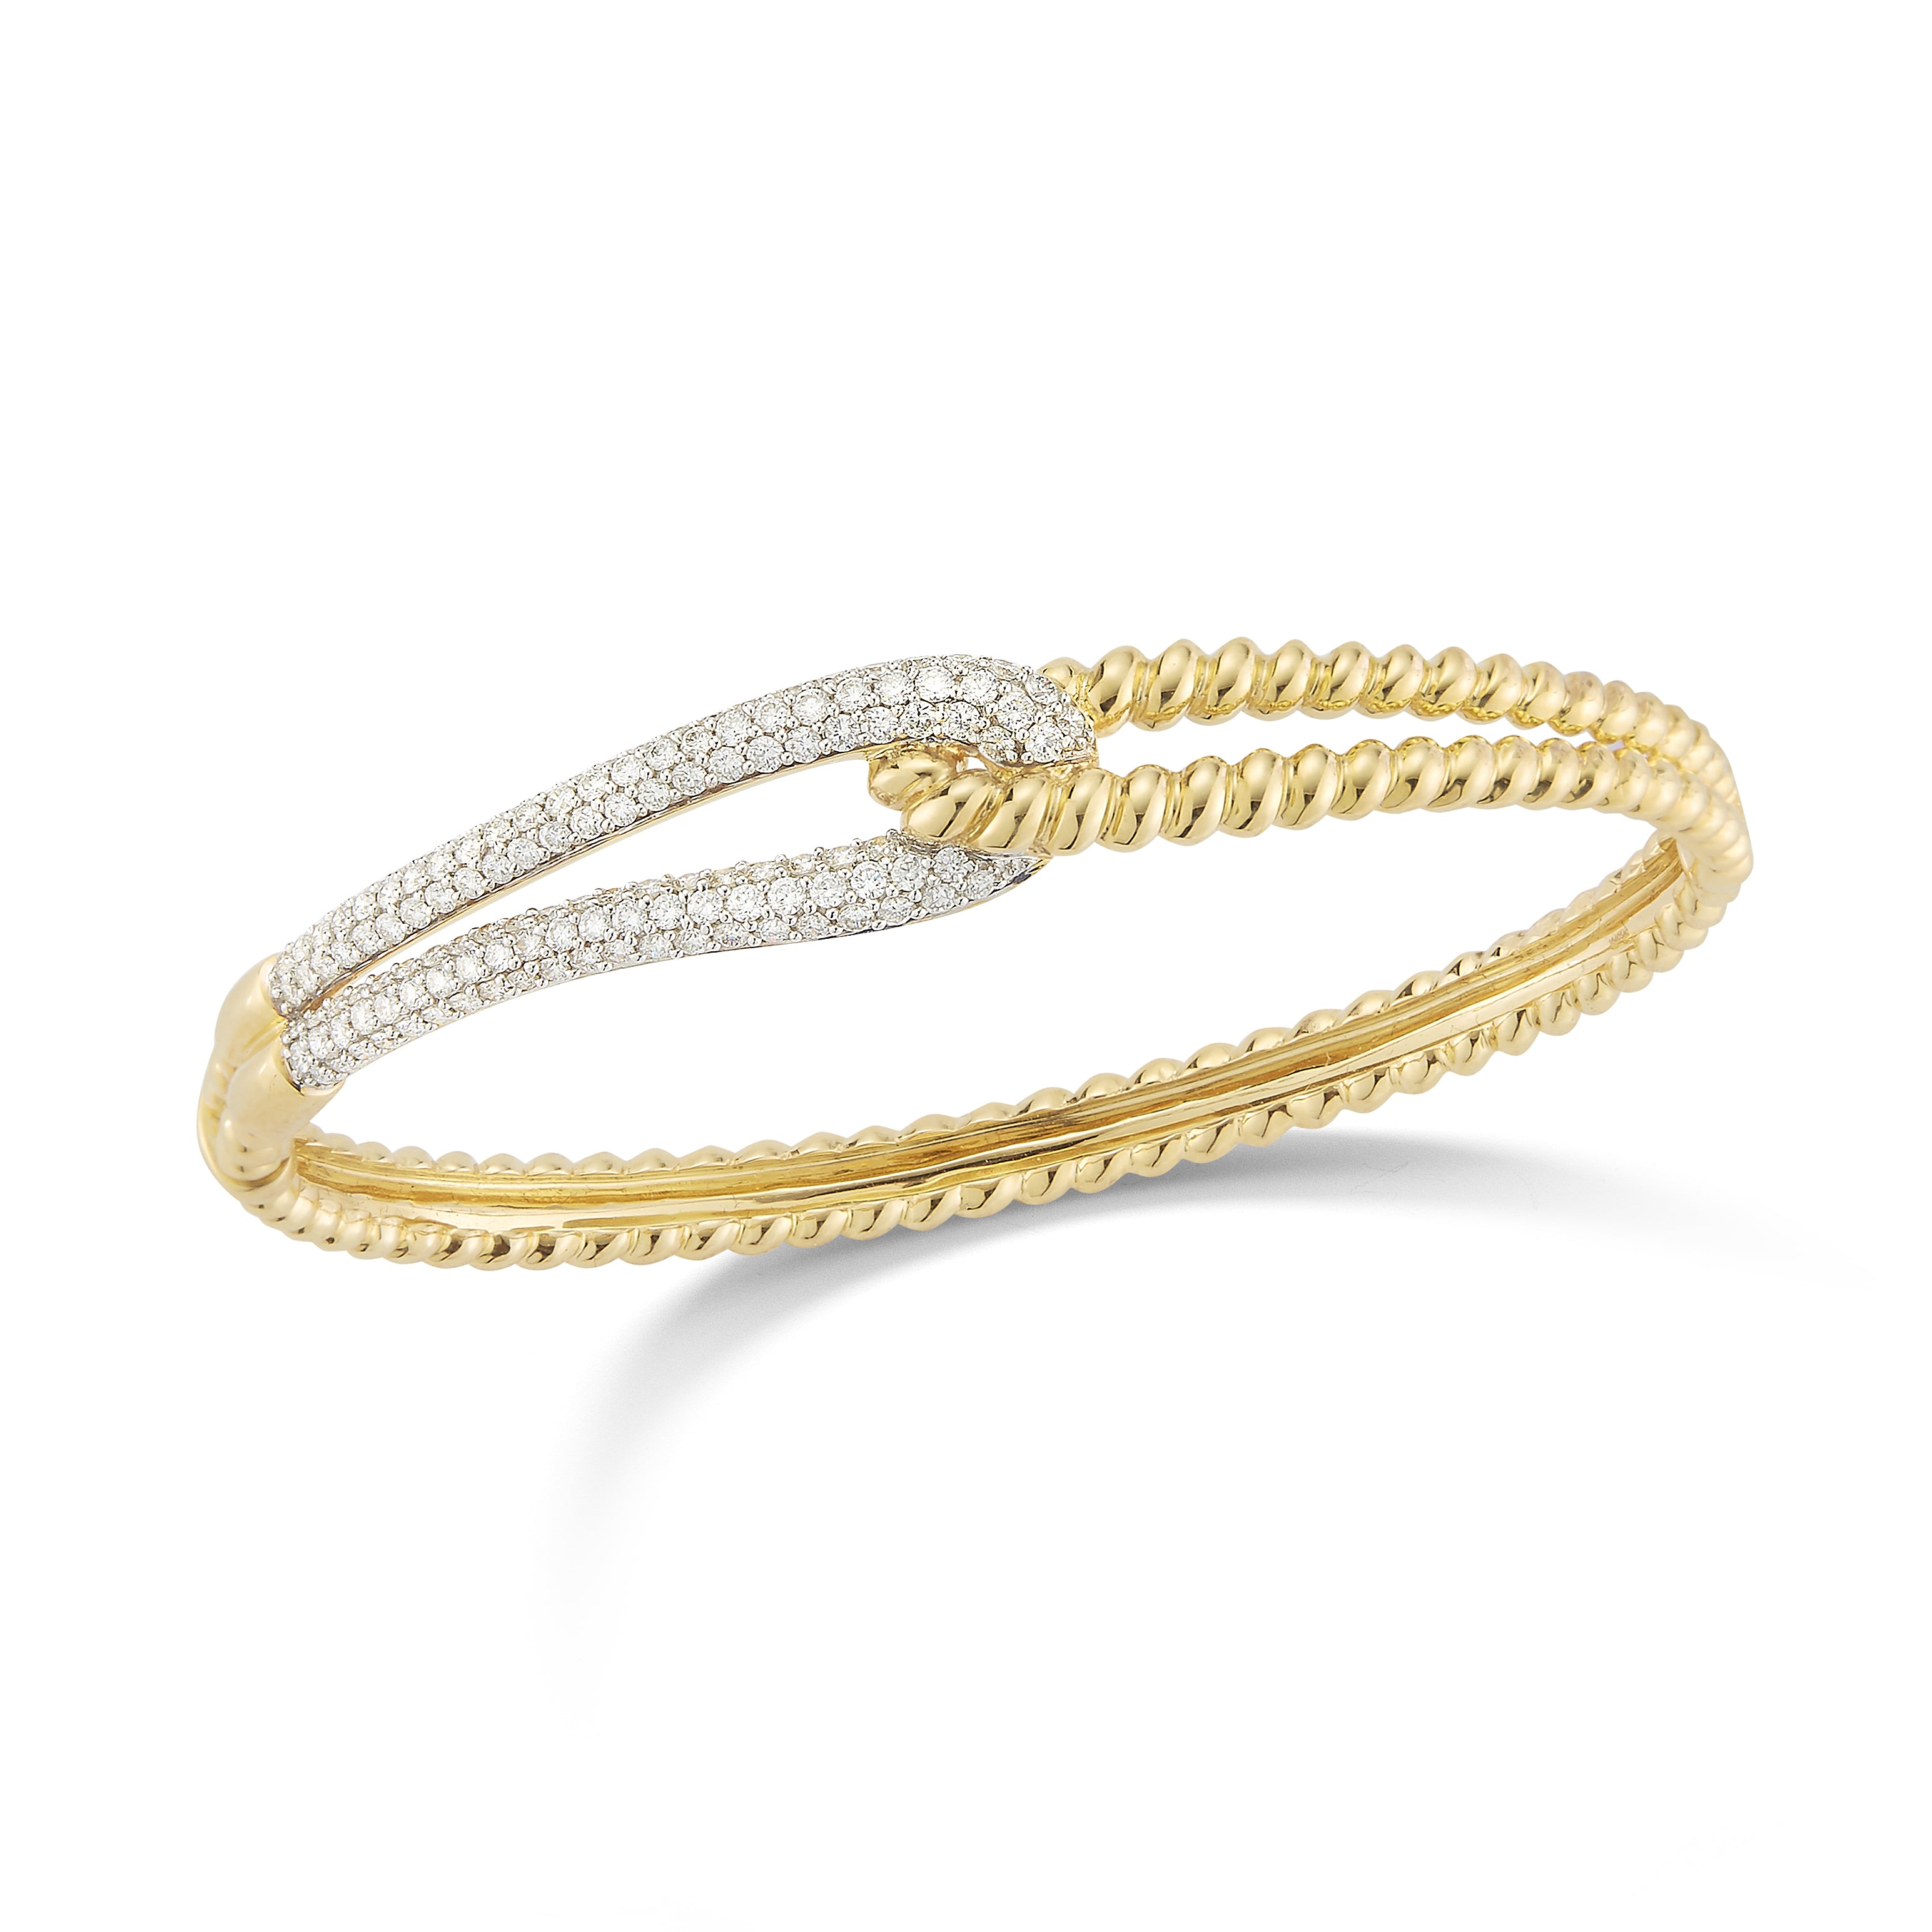 Large Diamond Linked Rope Bangle Bracelet Yellow Gold / 16 cm